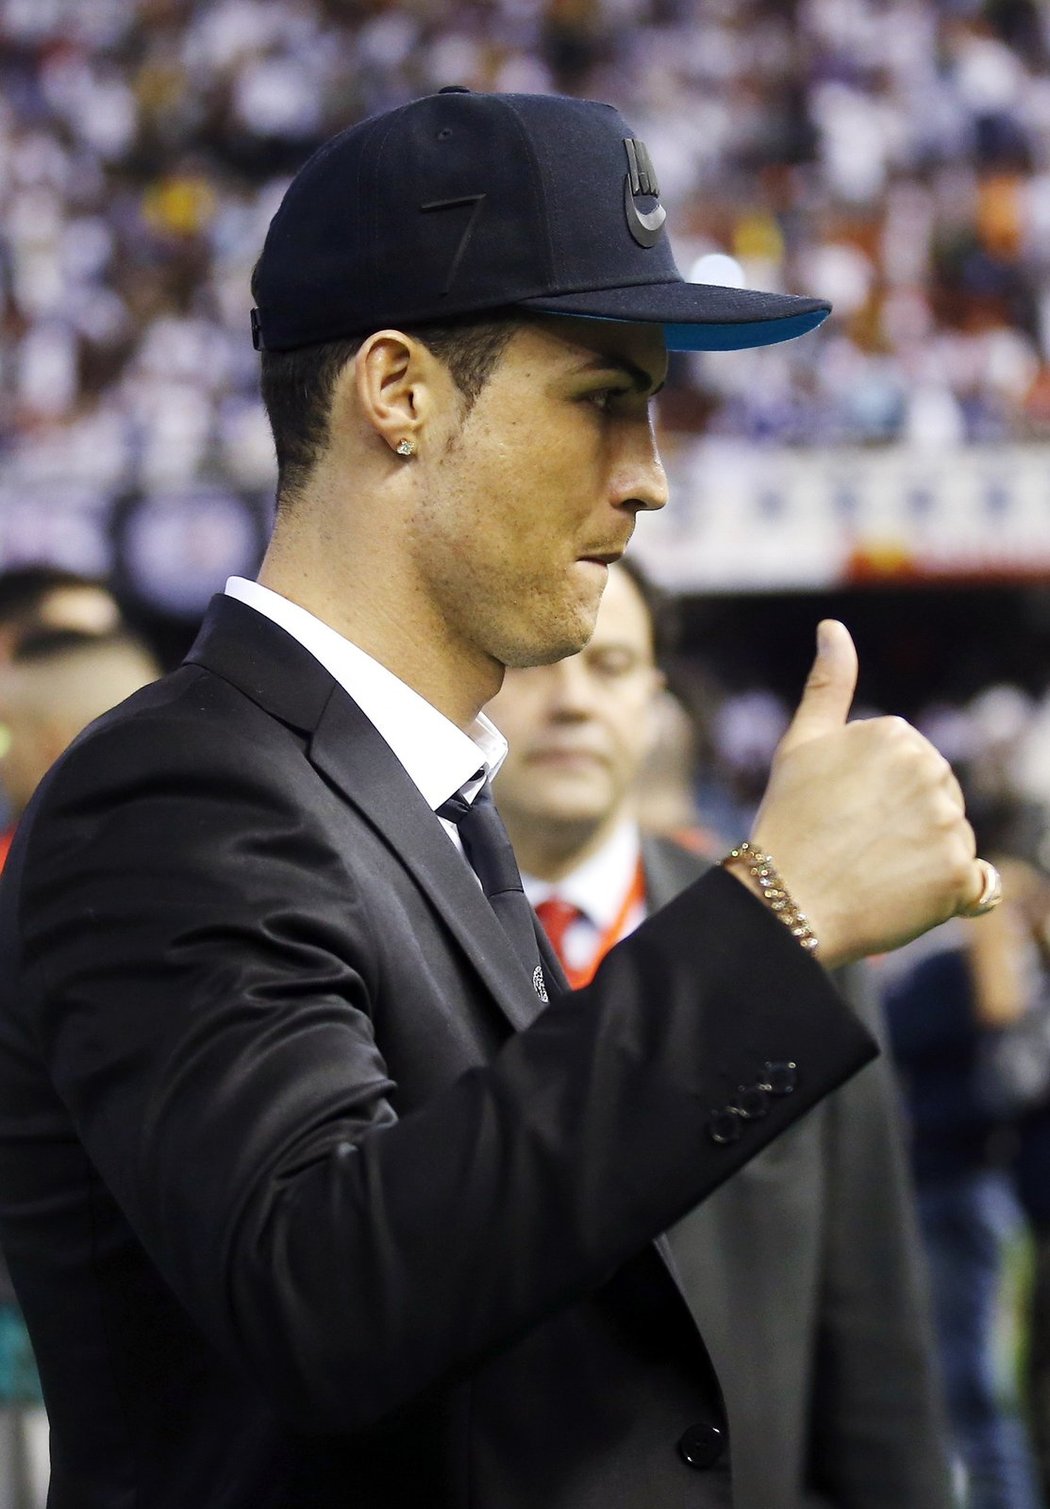 Kšiltovka a spokojenost. Cristiano Ronaldo Realu Madrid kvůli zranění ve finále Španělského poháru chyběl, přesto jeho tým porazil Barcelonu 2:1